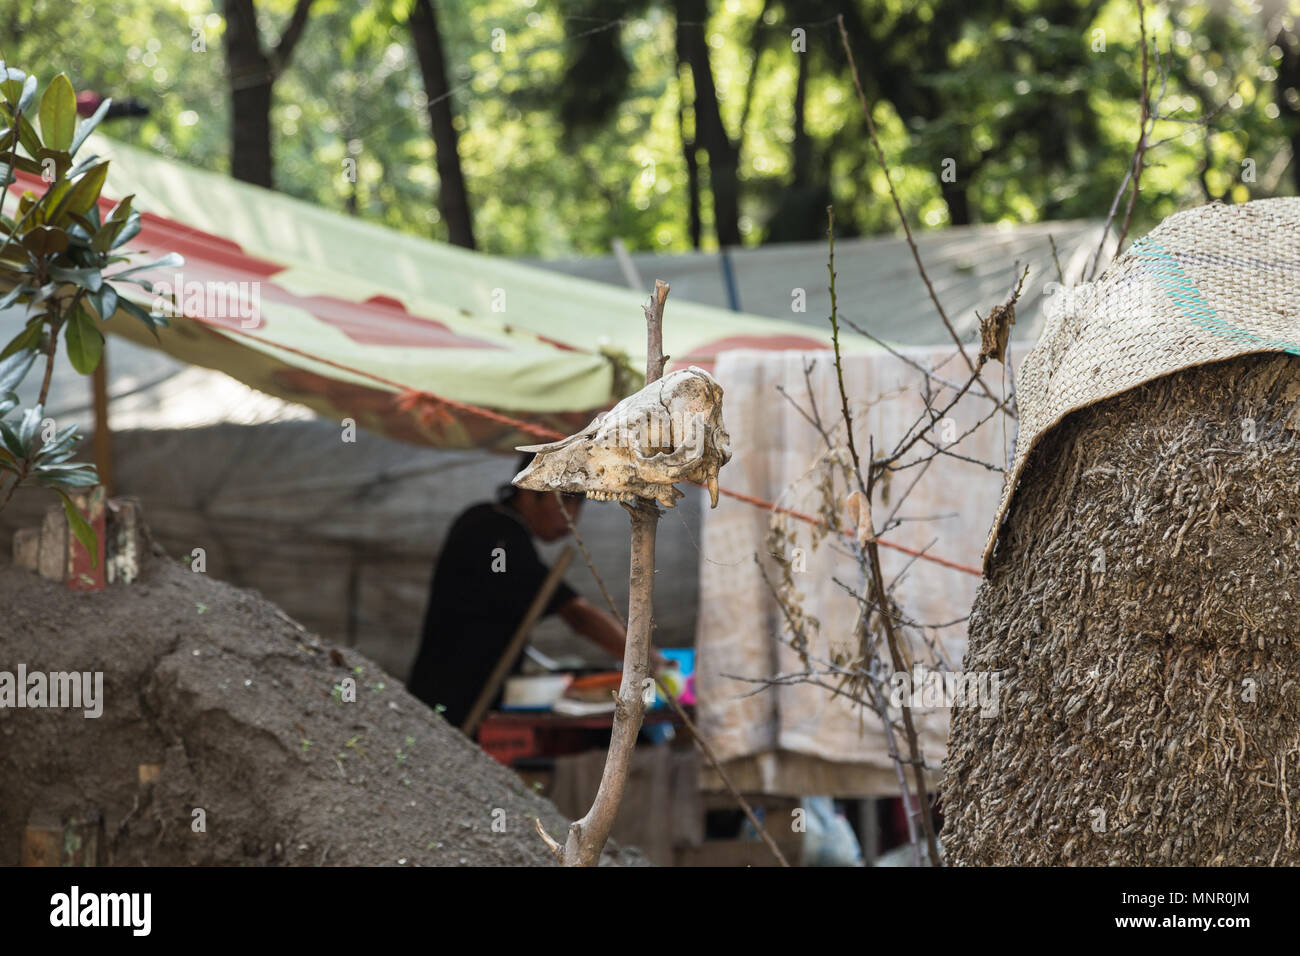 Fehlende iguala Studenten Fall Aktivist Campingplatz mit einem tierischen Schädel auf dem Erdhügel auf der Vorderseite abgesteckt wird, Mexiko City, Mexiko. Stockfoto